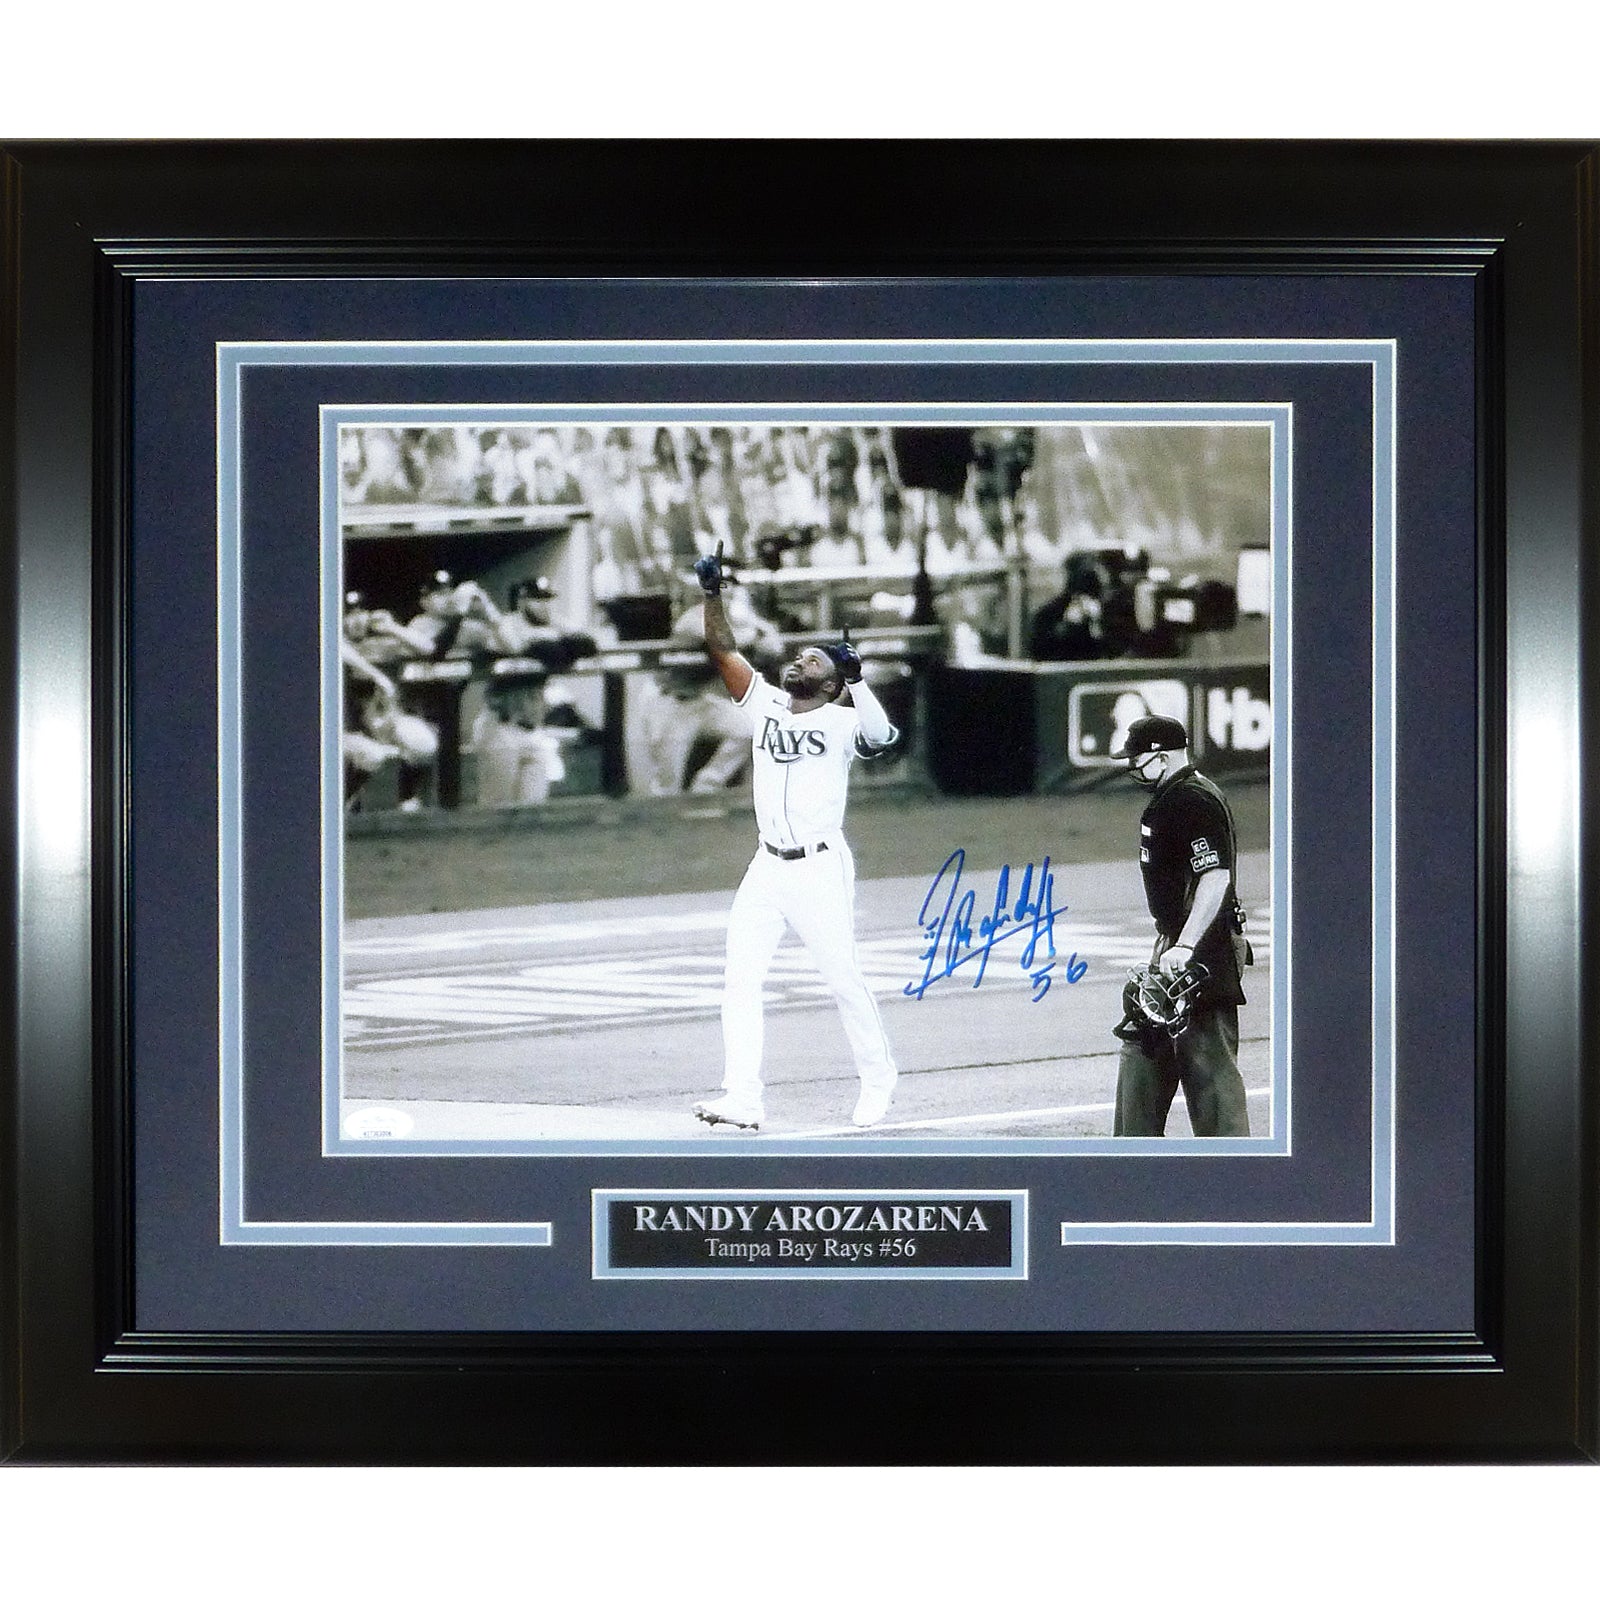 Randy Arozarena Autographed Tampa Bay Rays (Spotlight HR Celebration)  Deluxe Framed 11x14 Photo - JSA